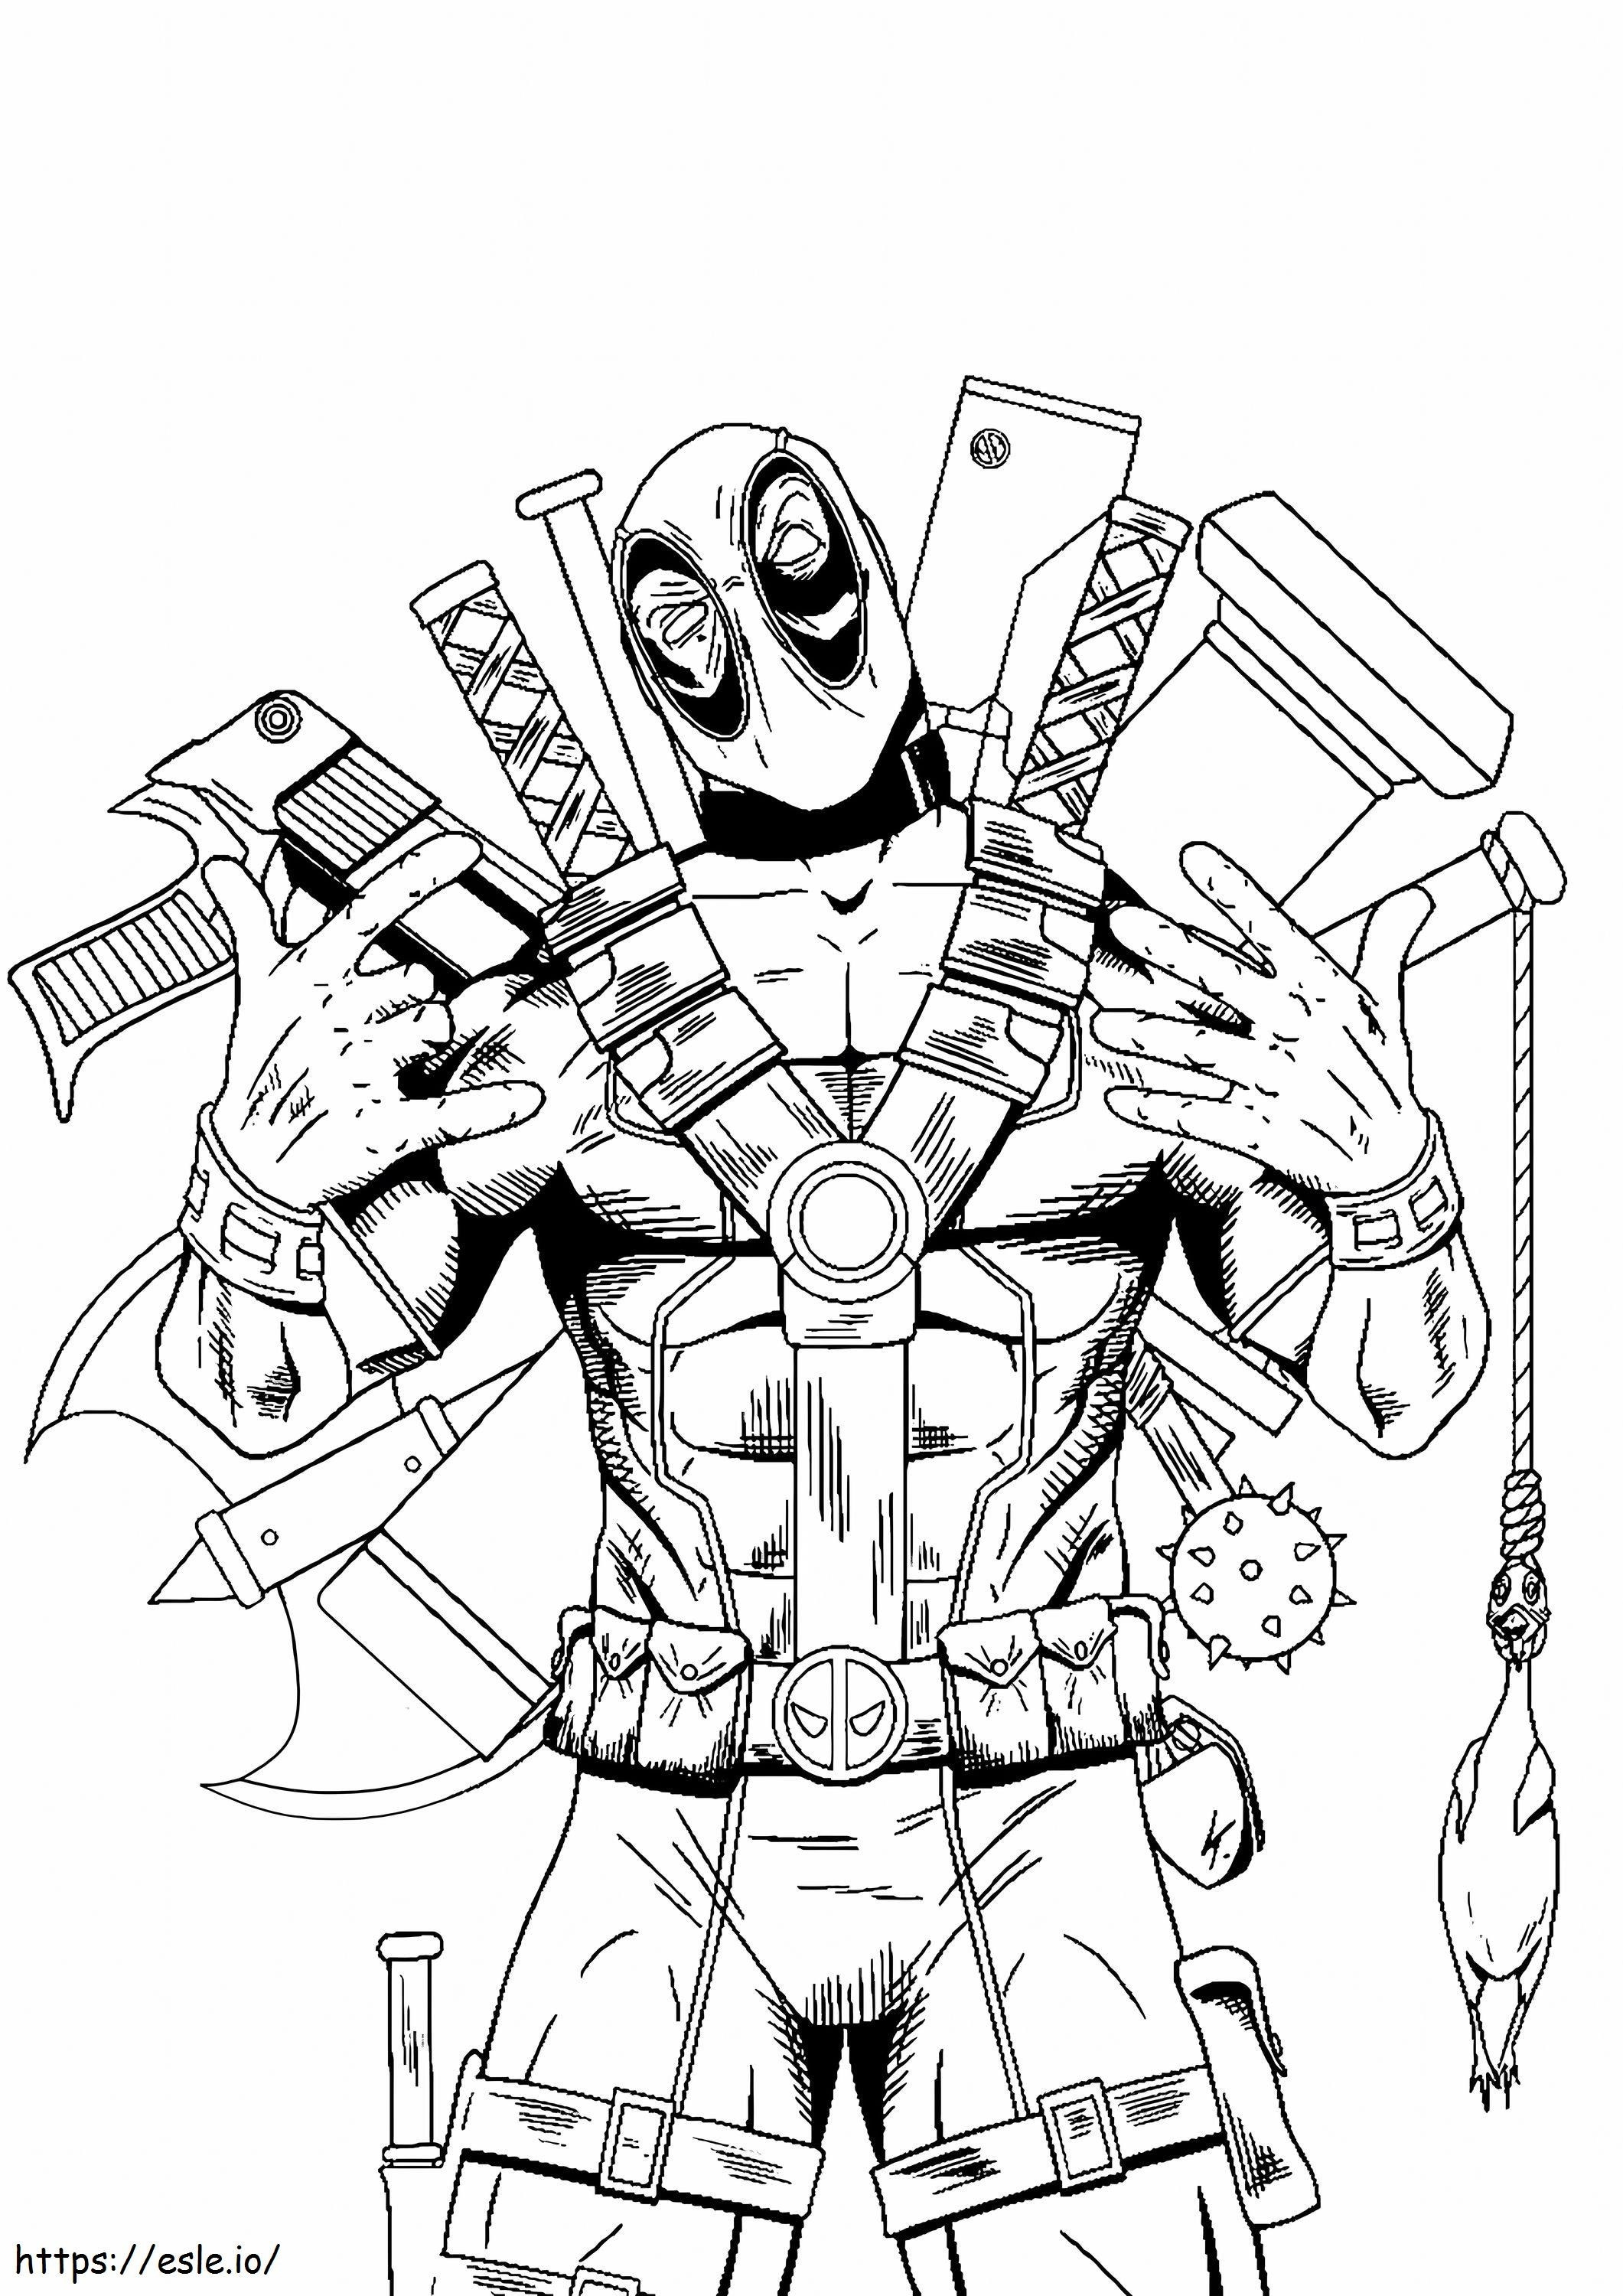 Skalowane Deadpool Con Armas kolorowanka